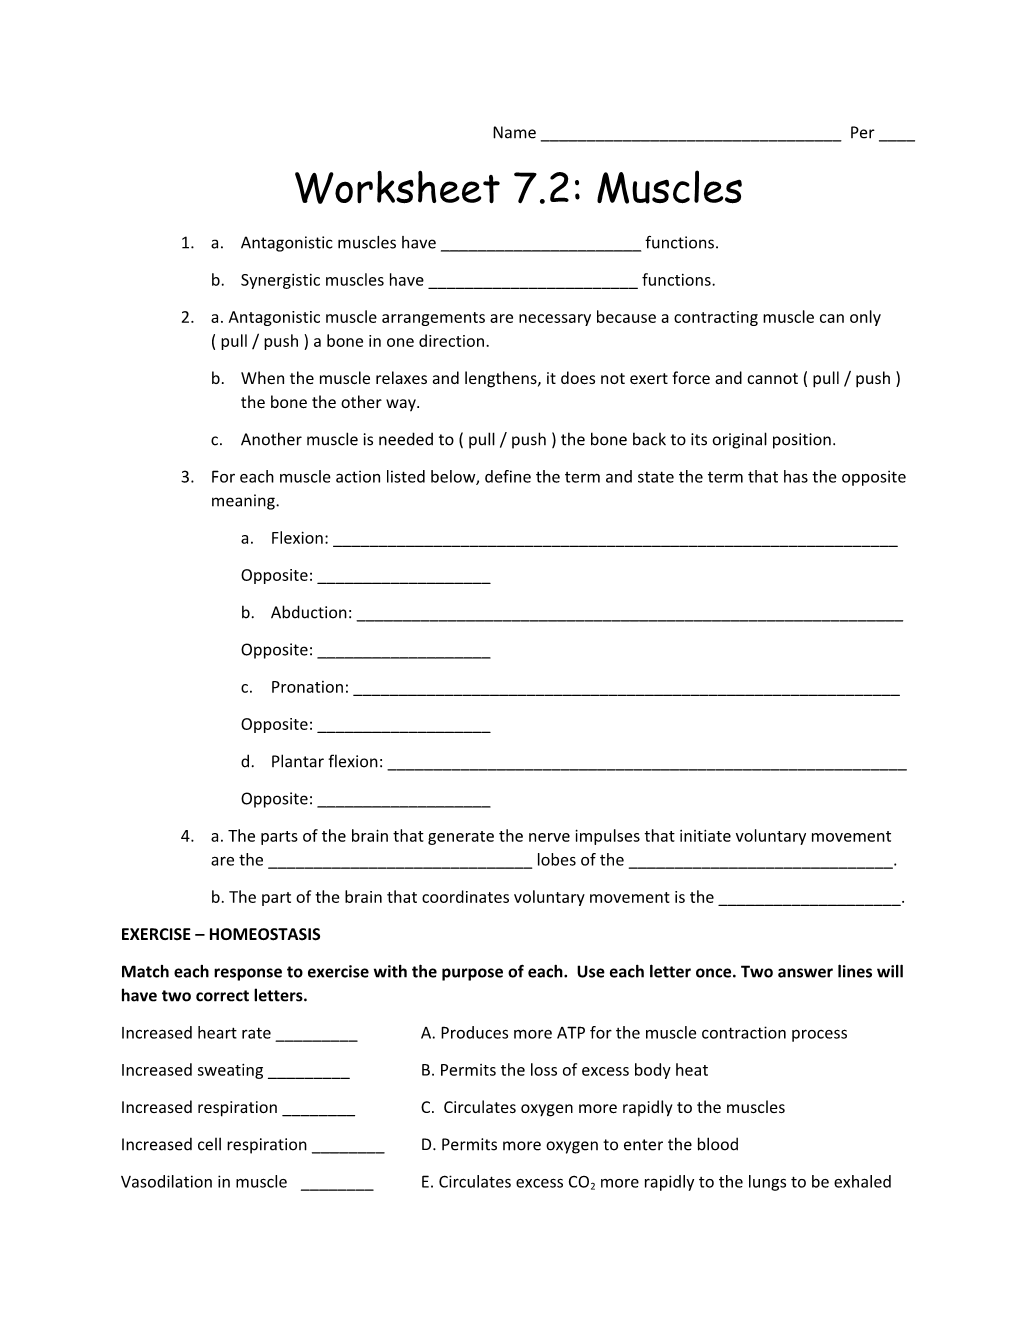 Worksheet 7.2: Muscles